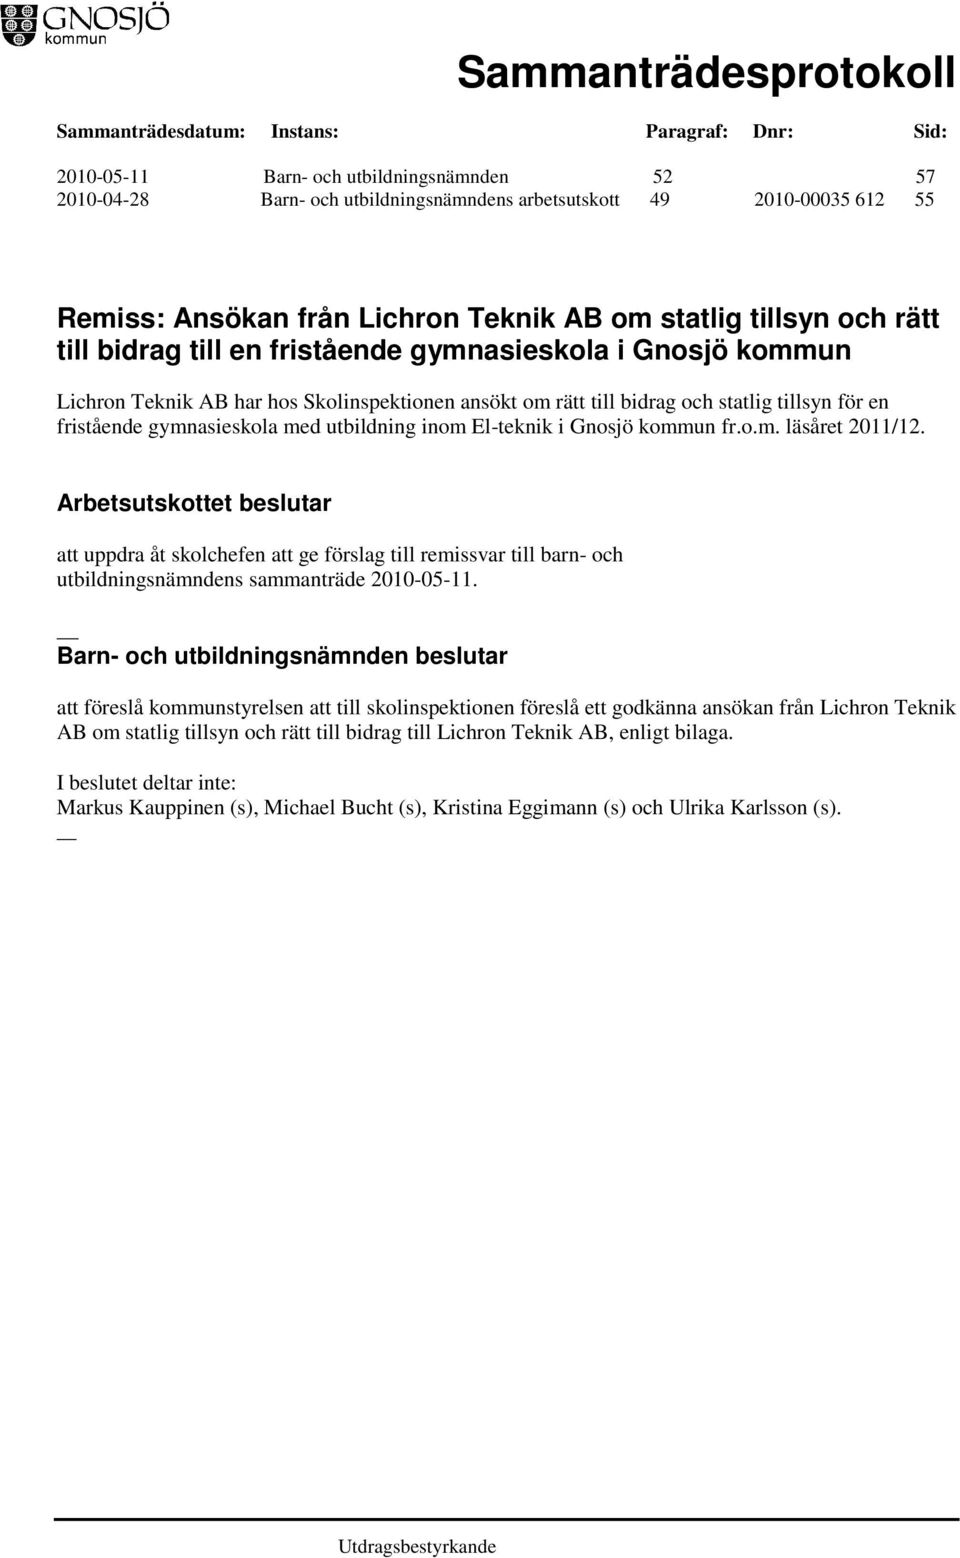 El-teknik i Gnosjö kommun fr.o.m. läsåret 2011/12. Arbetsutskottet beslutar att uppdra åt skolchefen att ge förslag till remissvar till barn- och utbildningsnämndens sammanträde 2010-05-11.